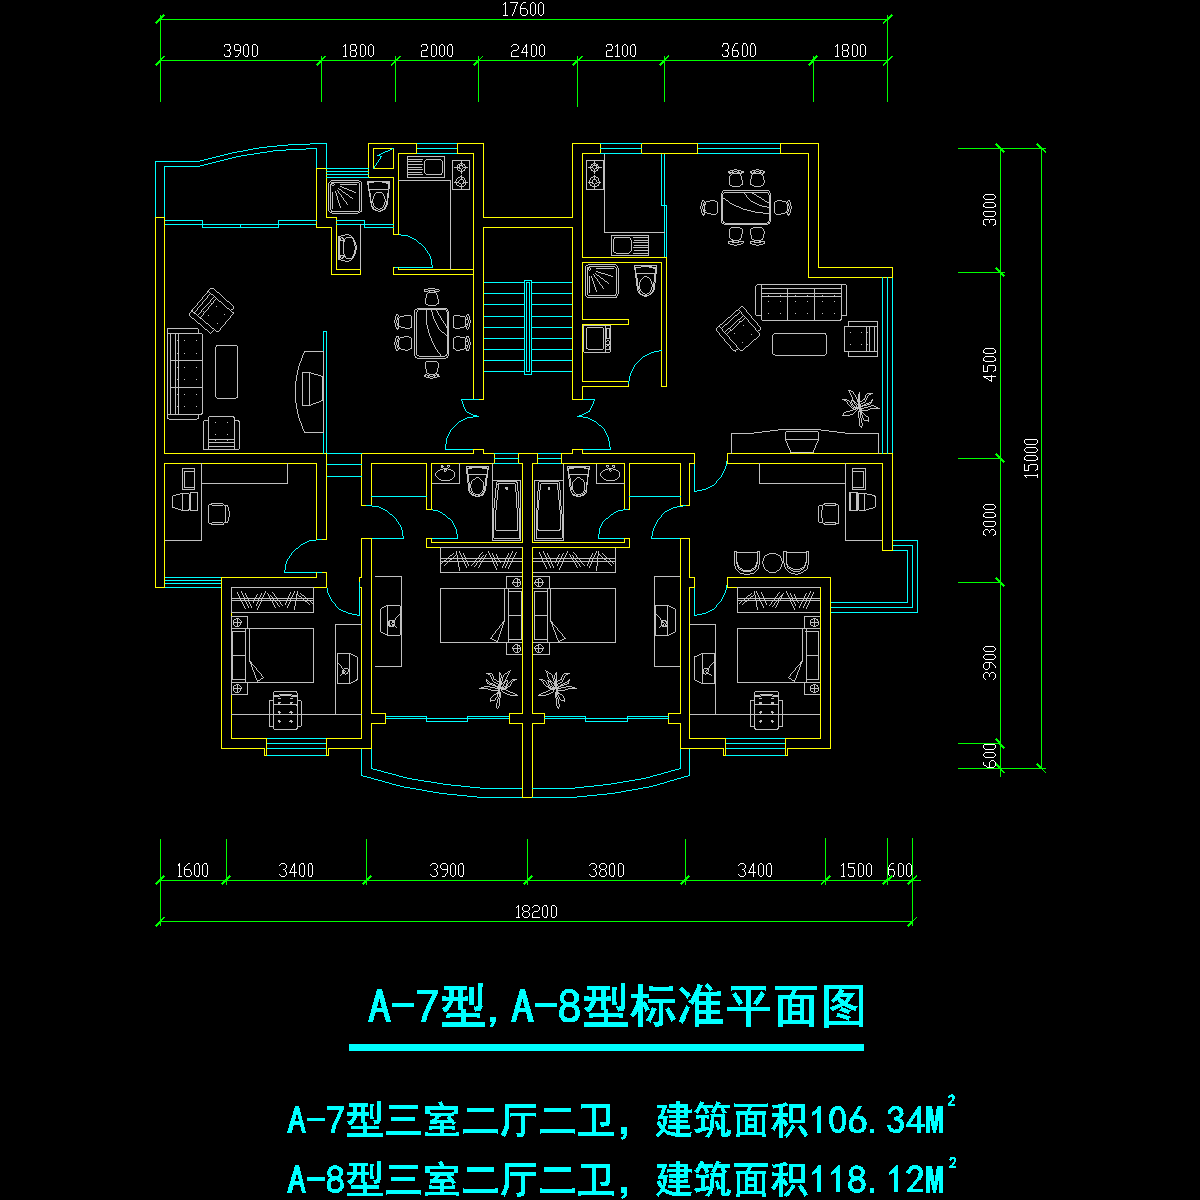 板式多层一梯二户三室二厅二卫户型CAD图纸(106/118)